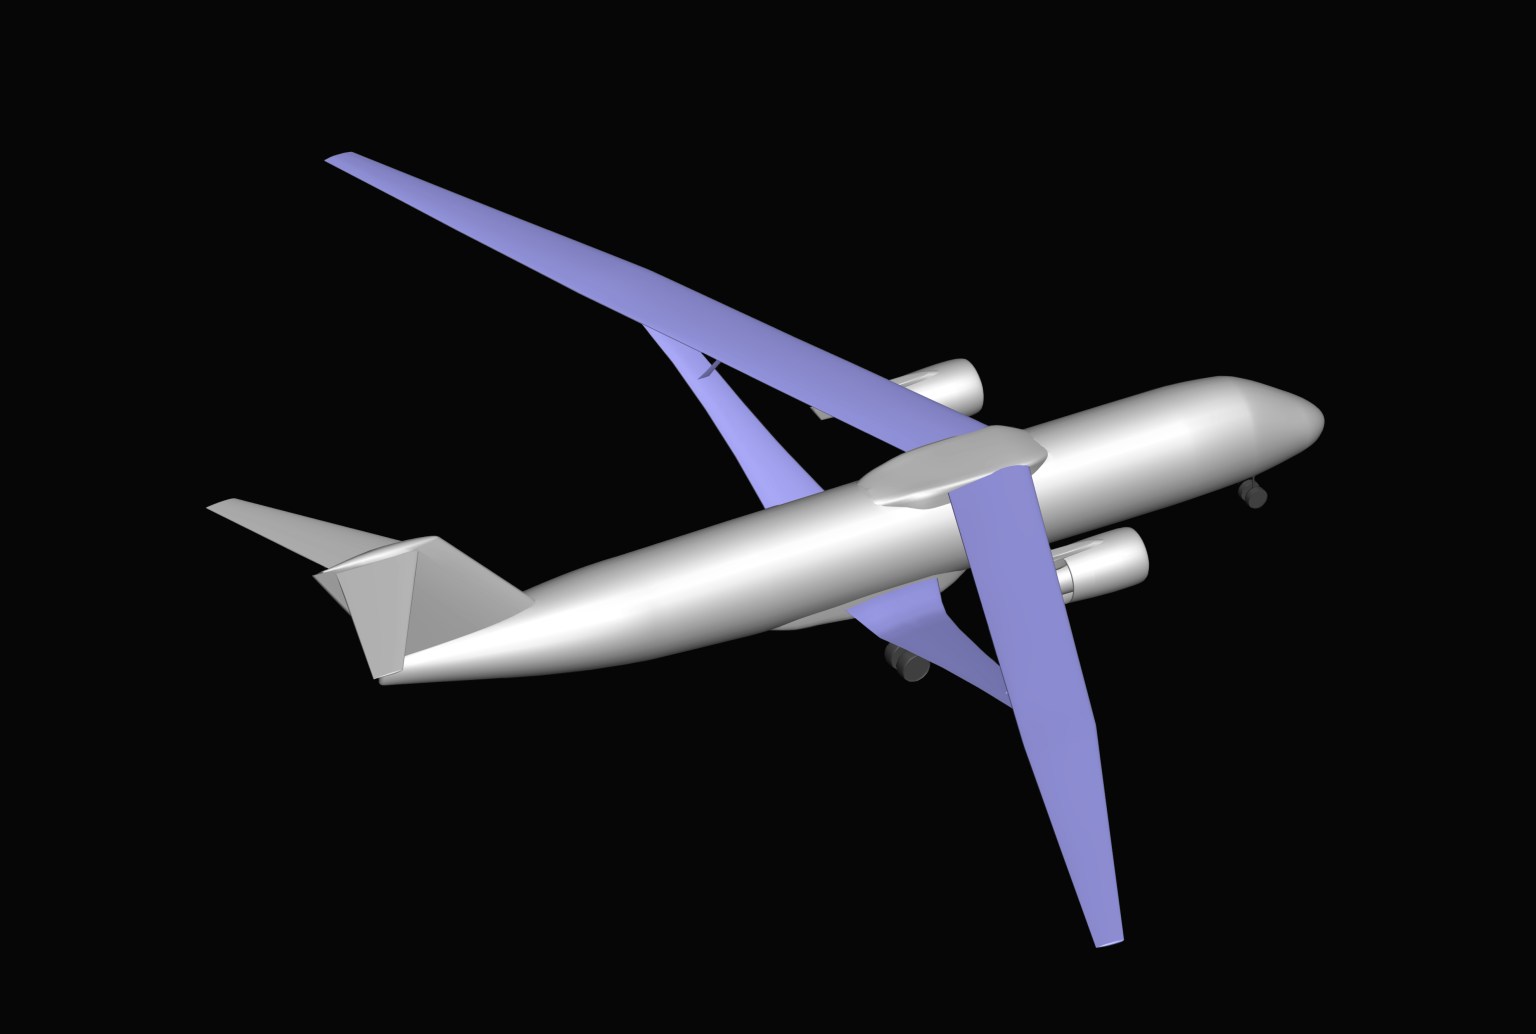 Aviary软件计算机生成的图像的俯视图显示，一架飞机拥有银色机身、T形尾翼和双喷气发动机，紫色机翼比今天的典型客机更长更薄。